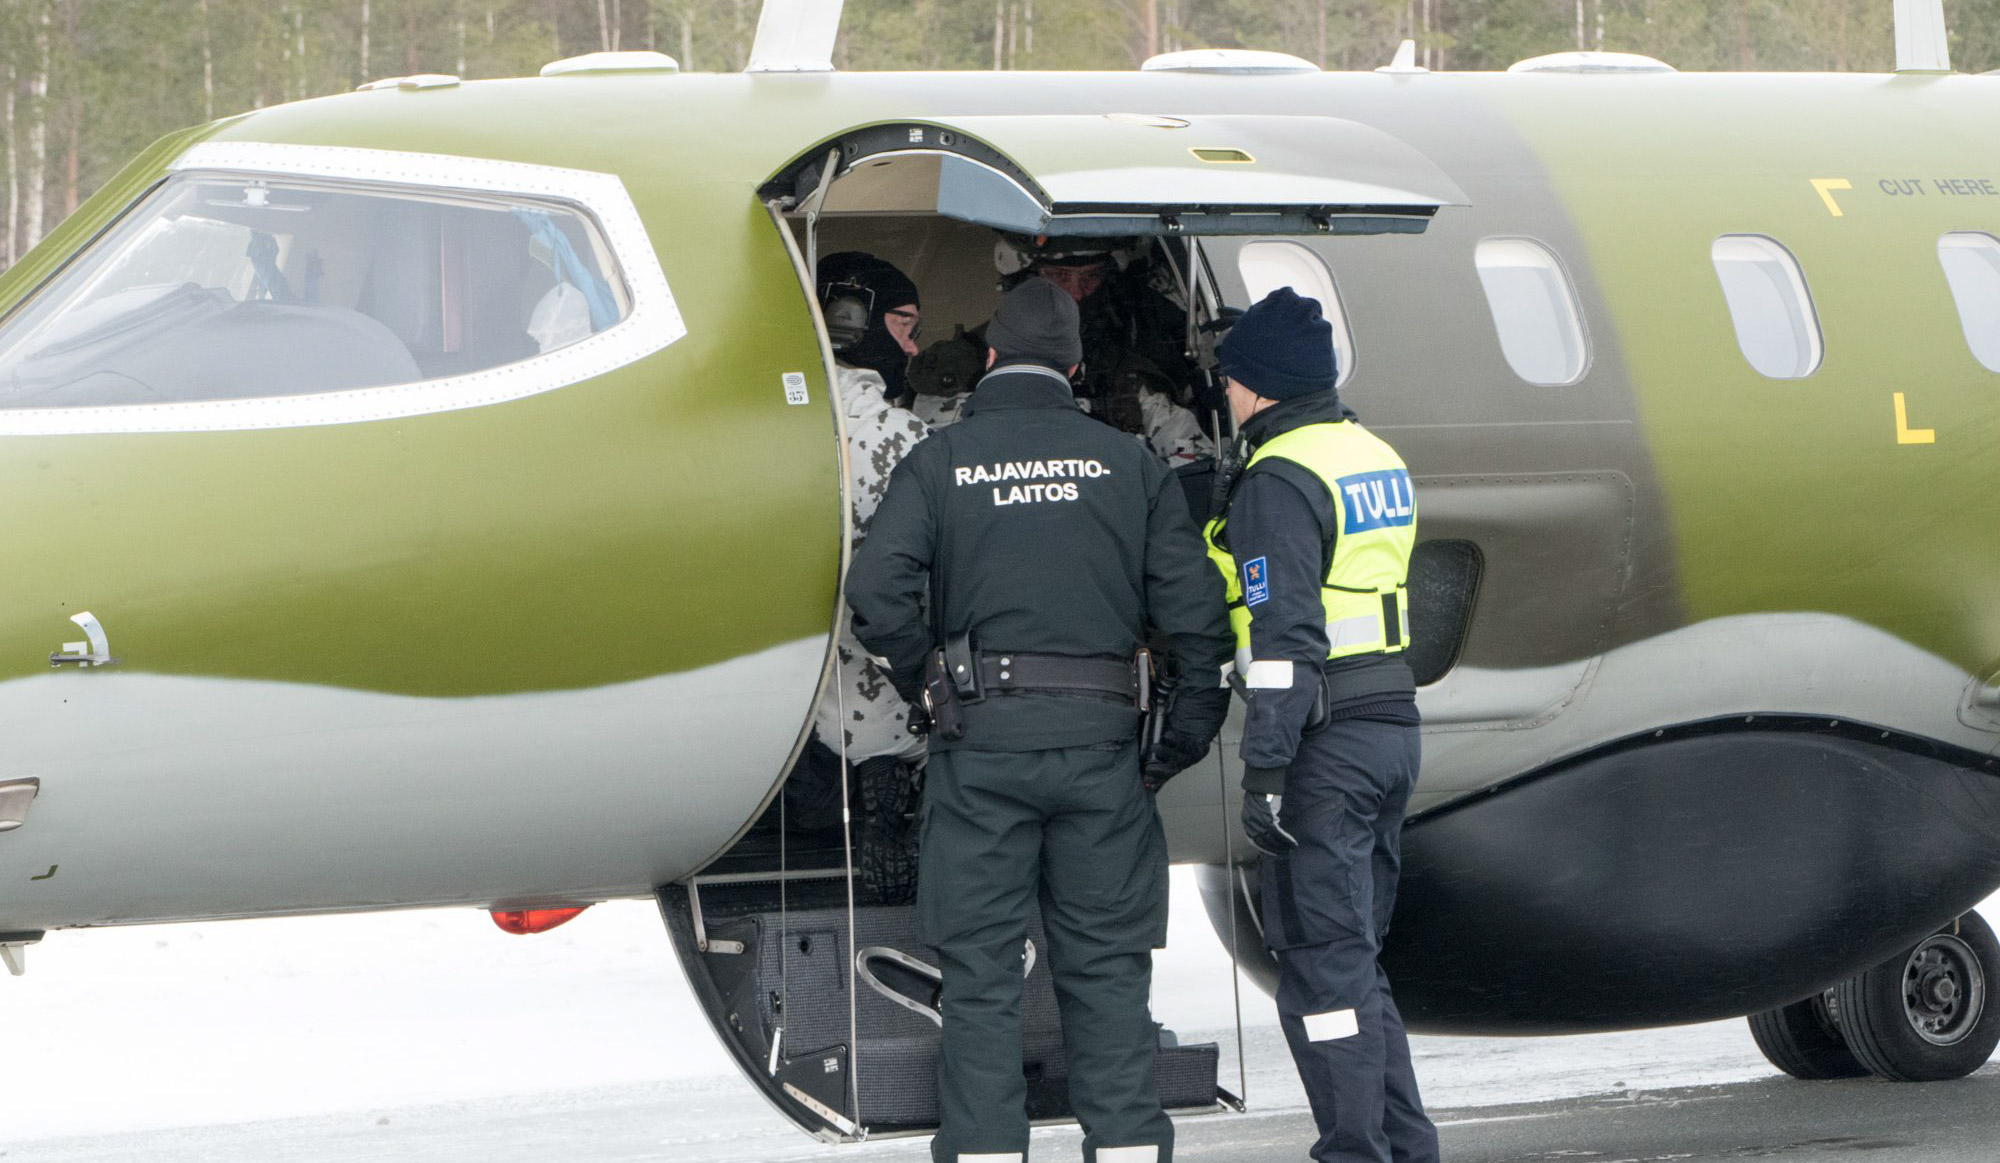 Lentokone jonka sisällä on sotilaita. Ovella kaksi henkilä joista toisella lukee selässä "Rajavartiolaitos" ja toisella "Tulli".